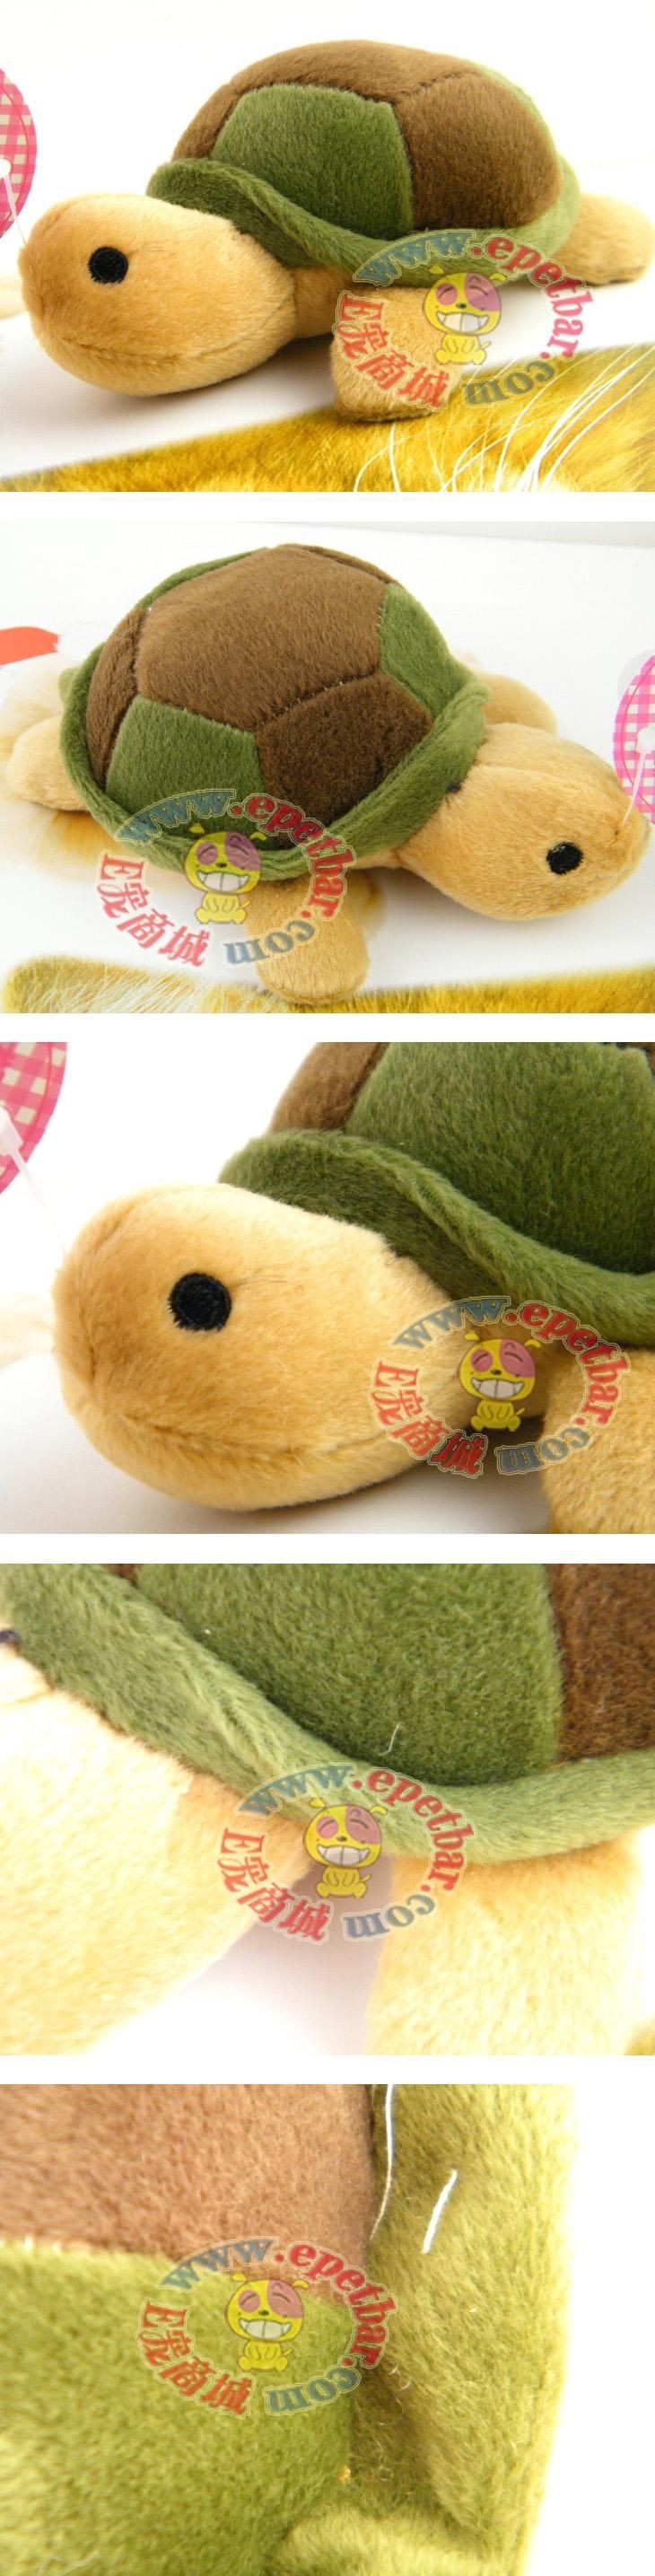 宠物商城狗狗用品网为你的爱宠提供:日本AiBaoPet 棉绒发声宠物玩具——小海龟